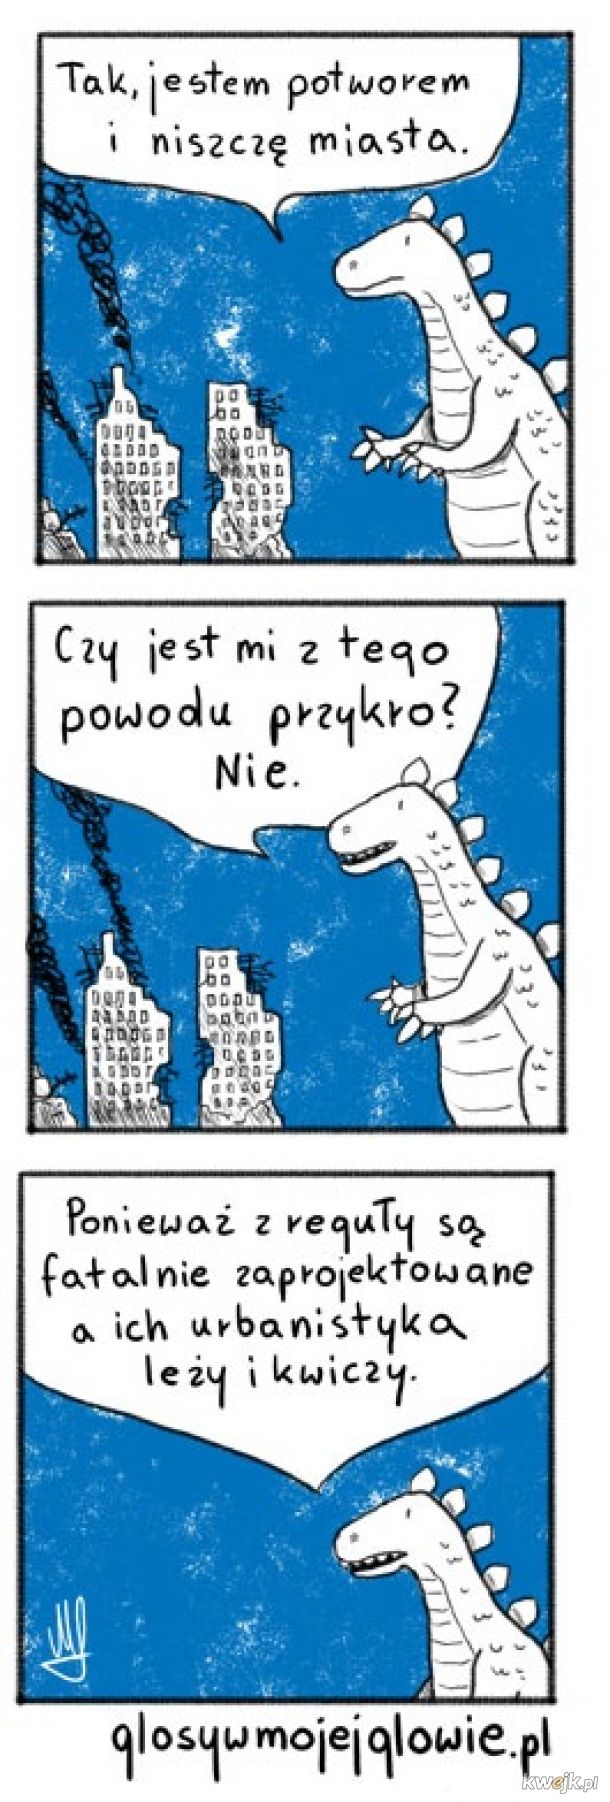 Trafne spostrzeżenie Godzilli, czyli abstrakcyjne komiksy Maćka Łazowskiego